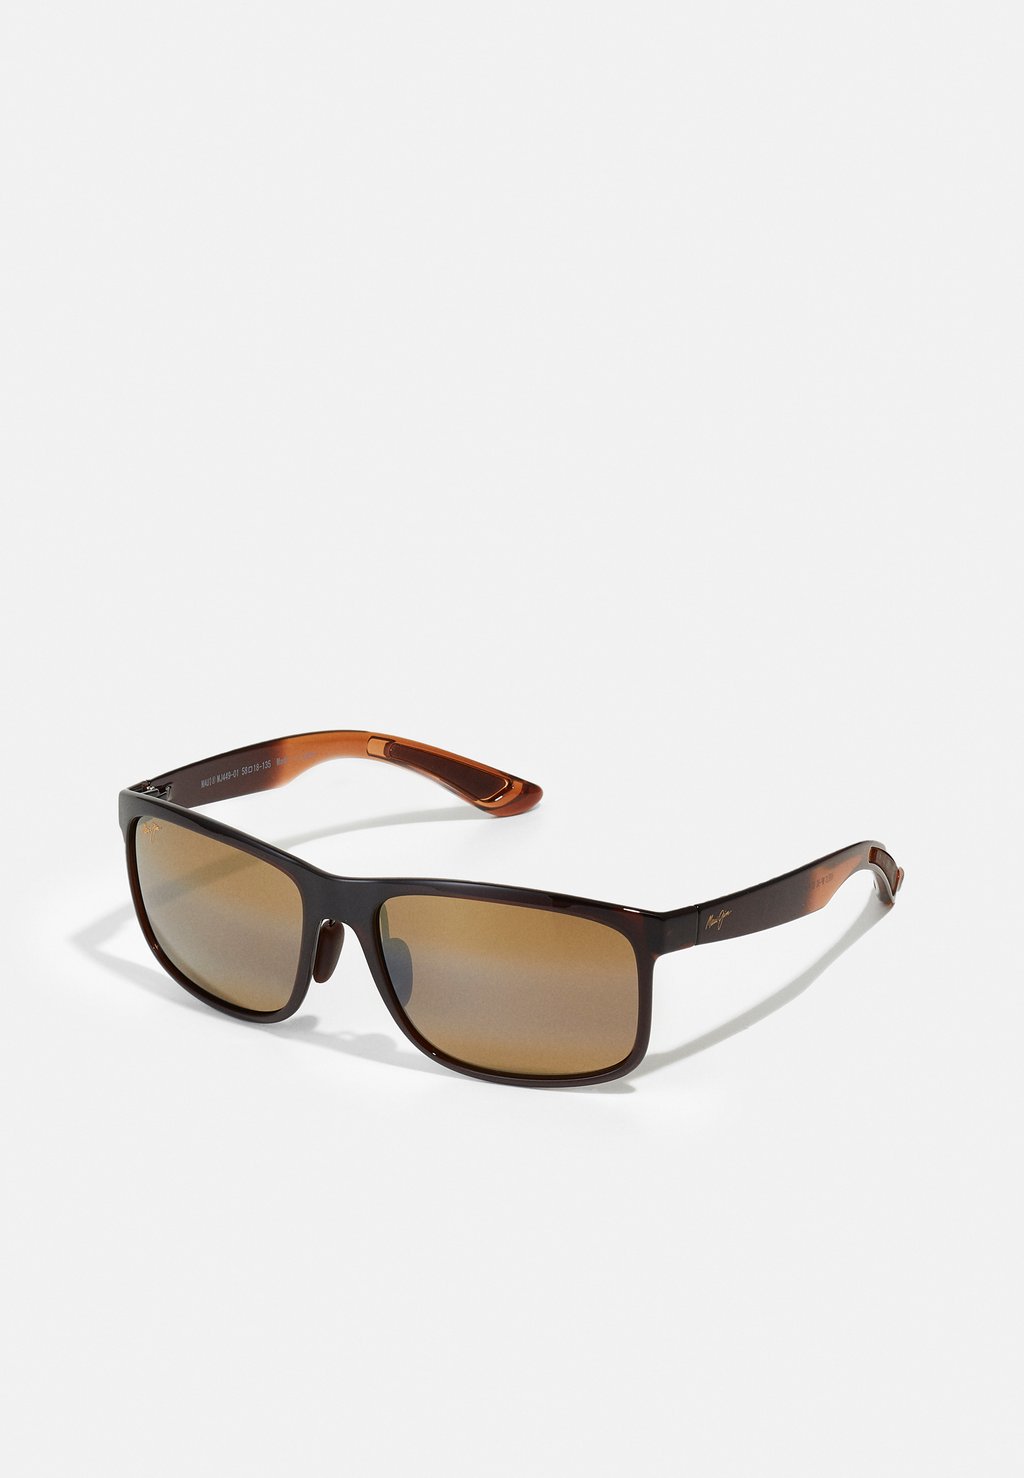 Солнцезащитные очки HUELO Maui Jim, цвет translucent rootbeer